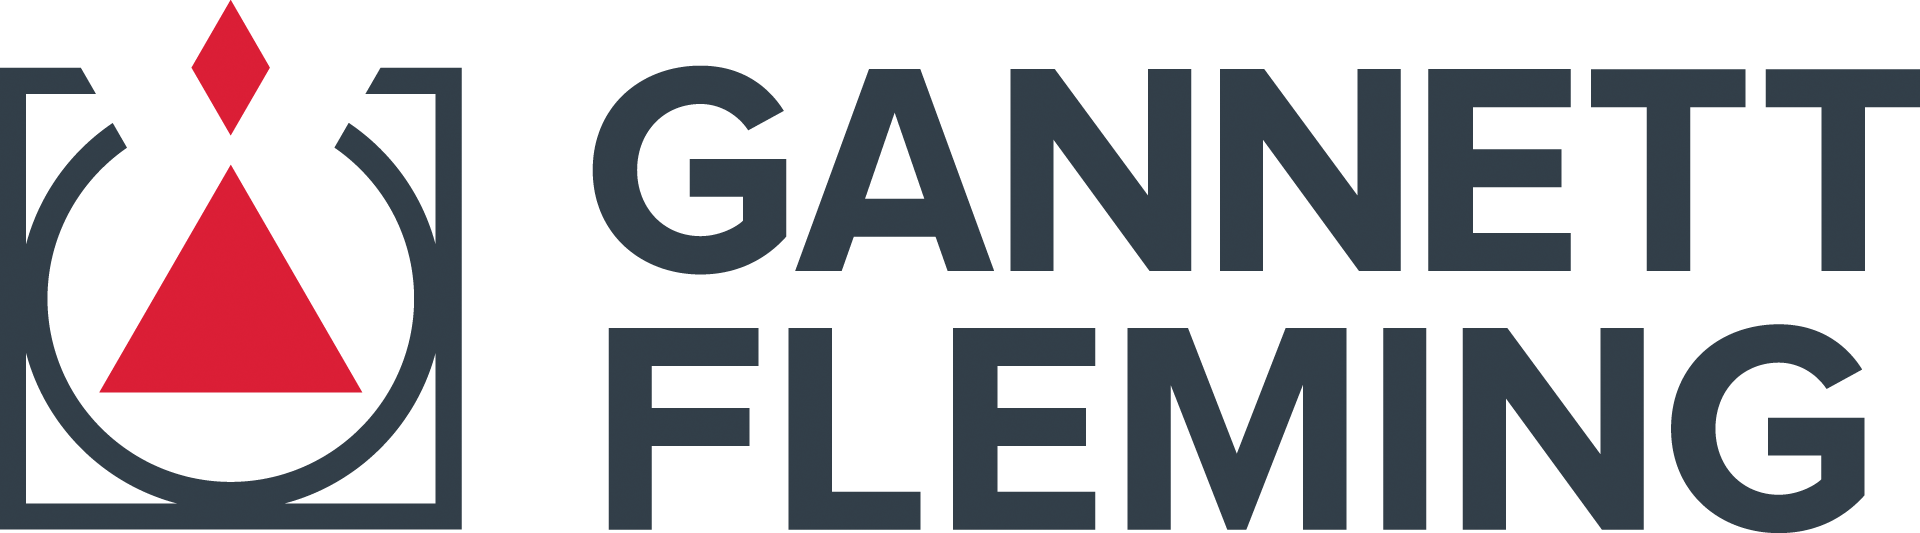 Gannett Fleming, Inc. logo